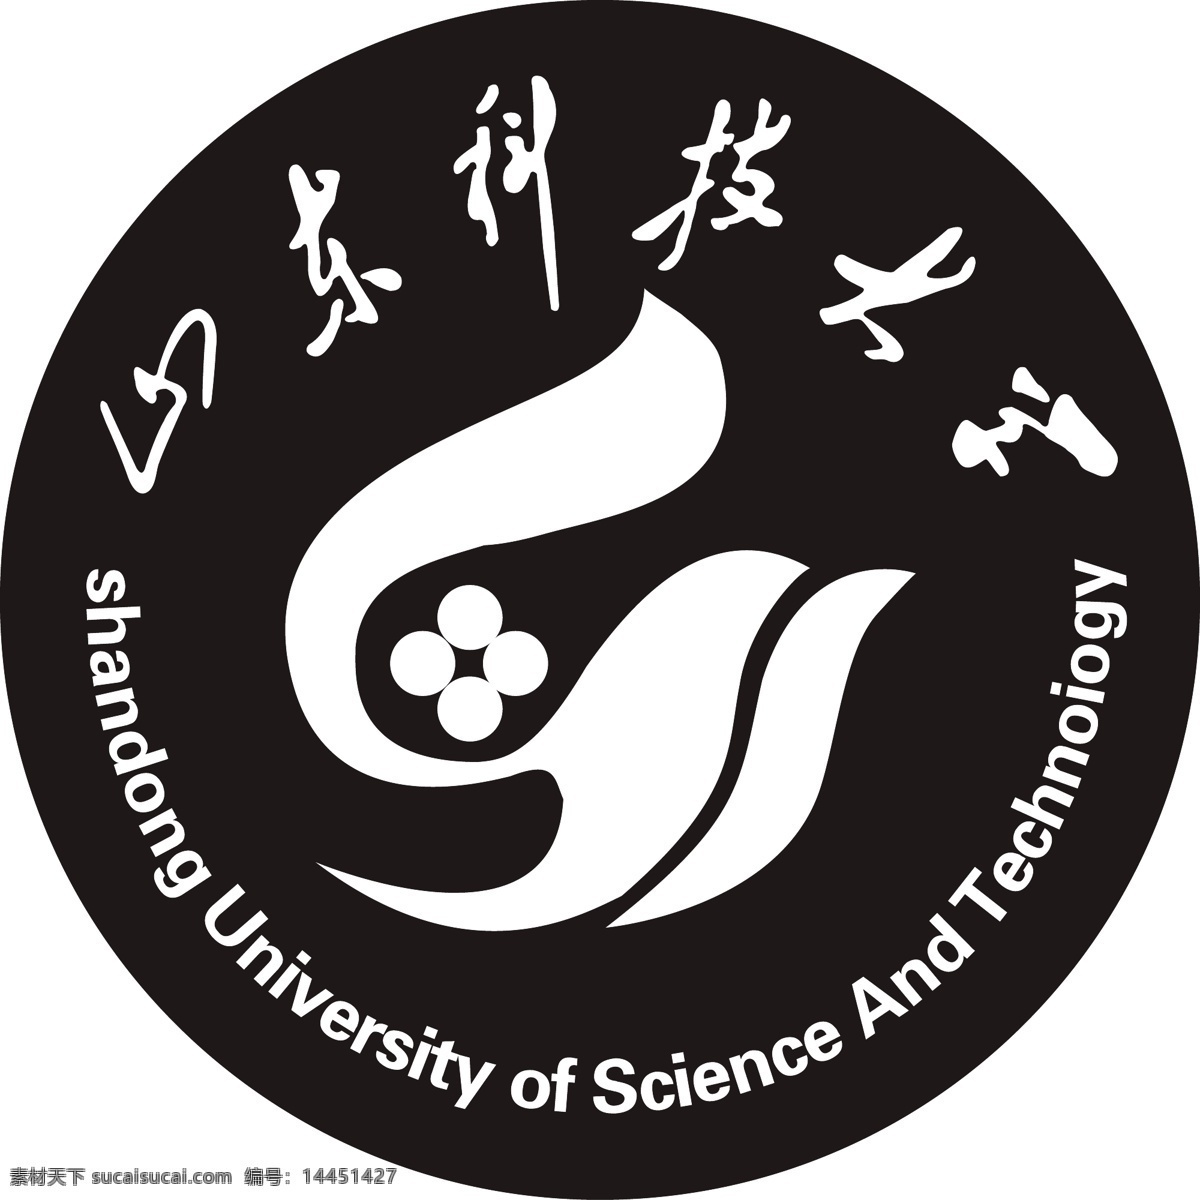 山东 科技 大学 logo 山东科技大学 lo go 其他图标 标志图标